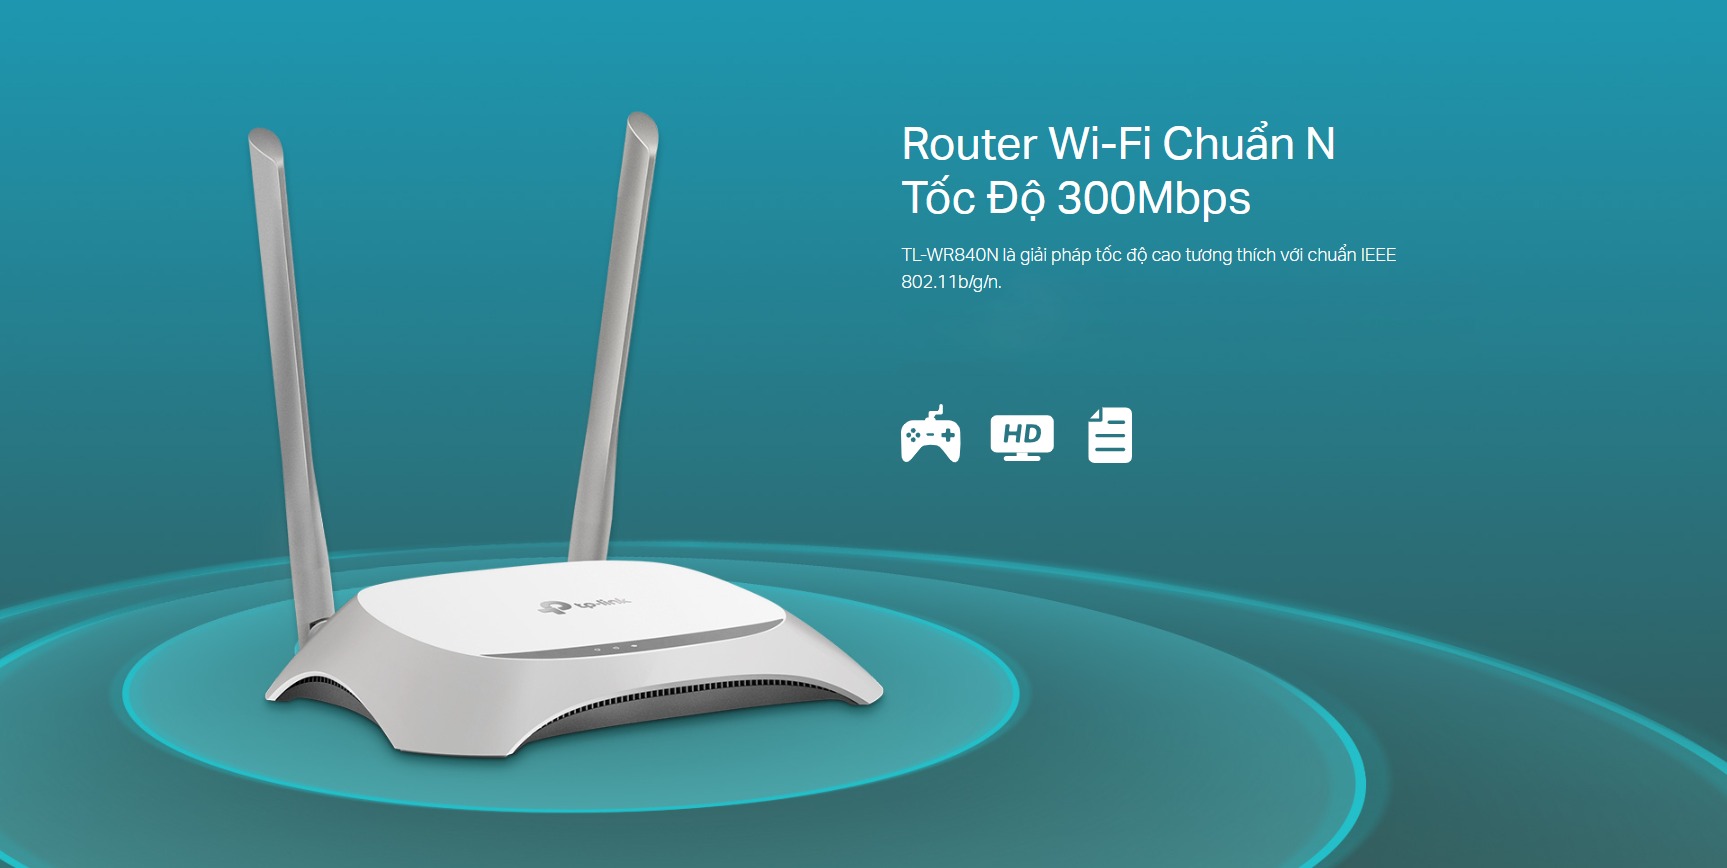 Phát Wifi TP-Link WR840N 2 Anten là giải pháp tốc độ cao mang lại cho người dùng hiệu suất Wi-Fi lên tới 300Mbps.